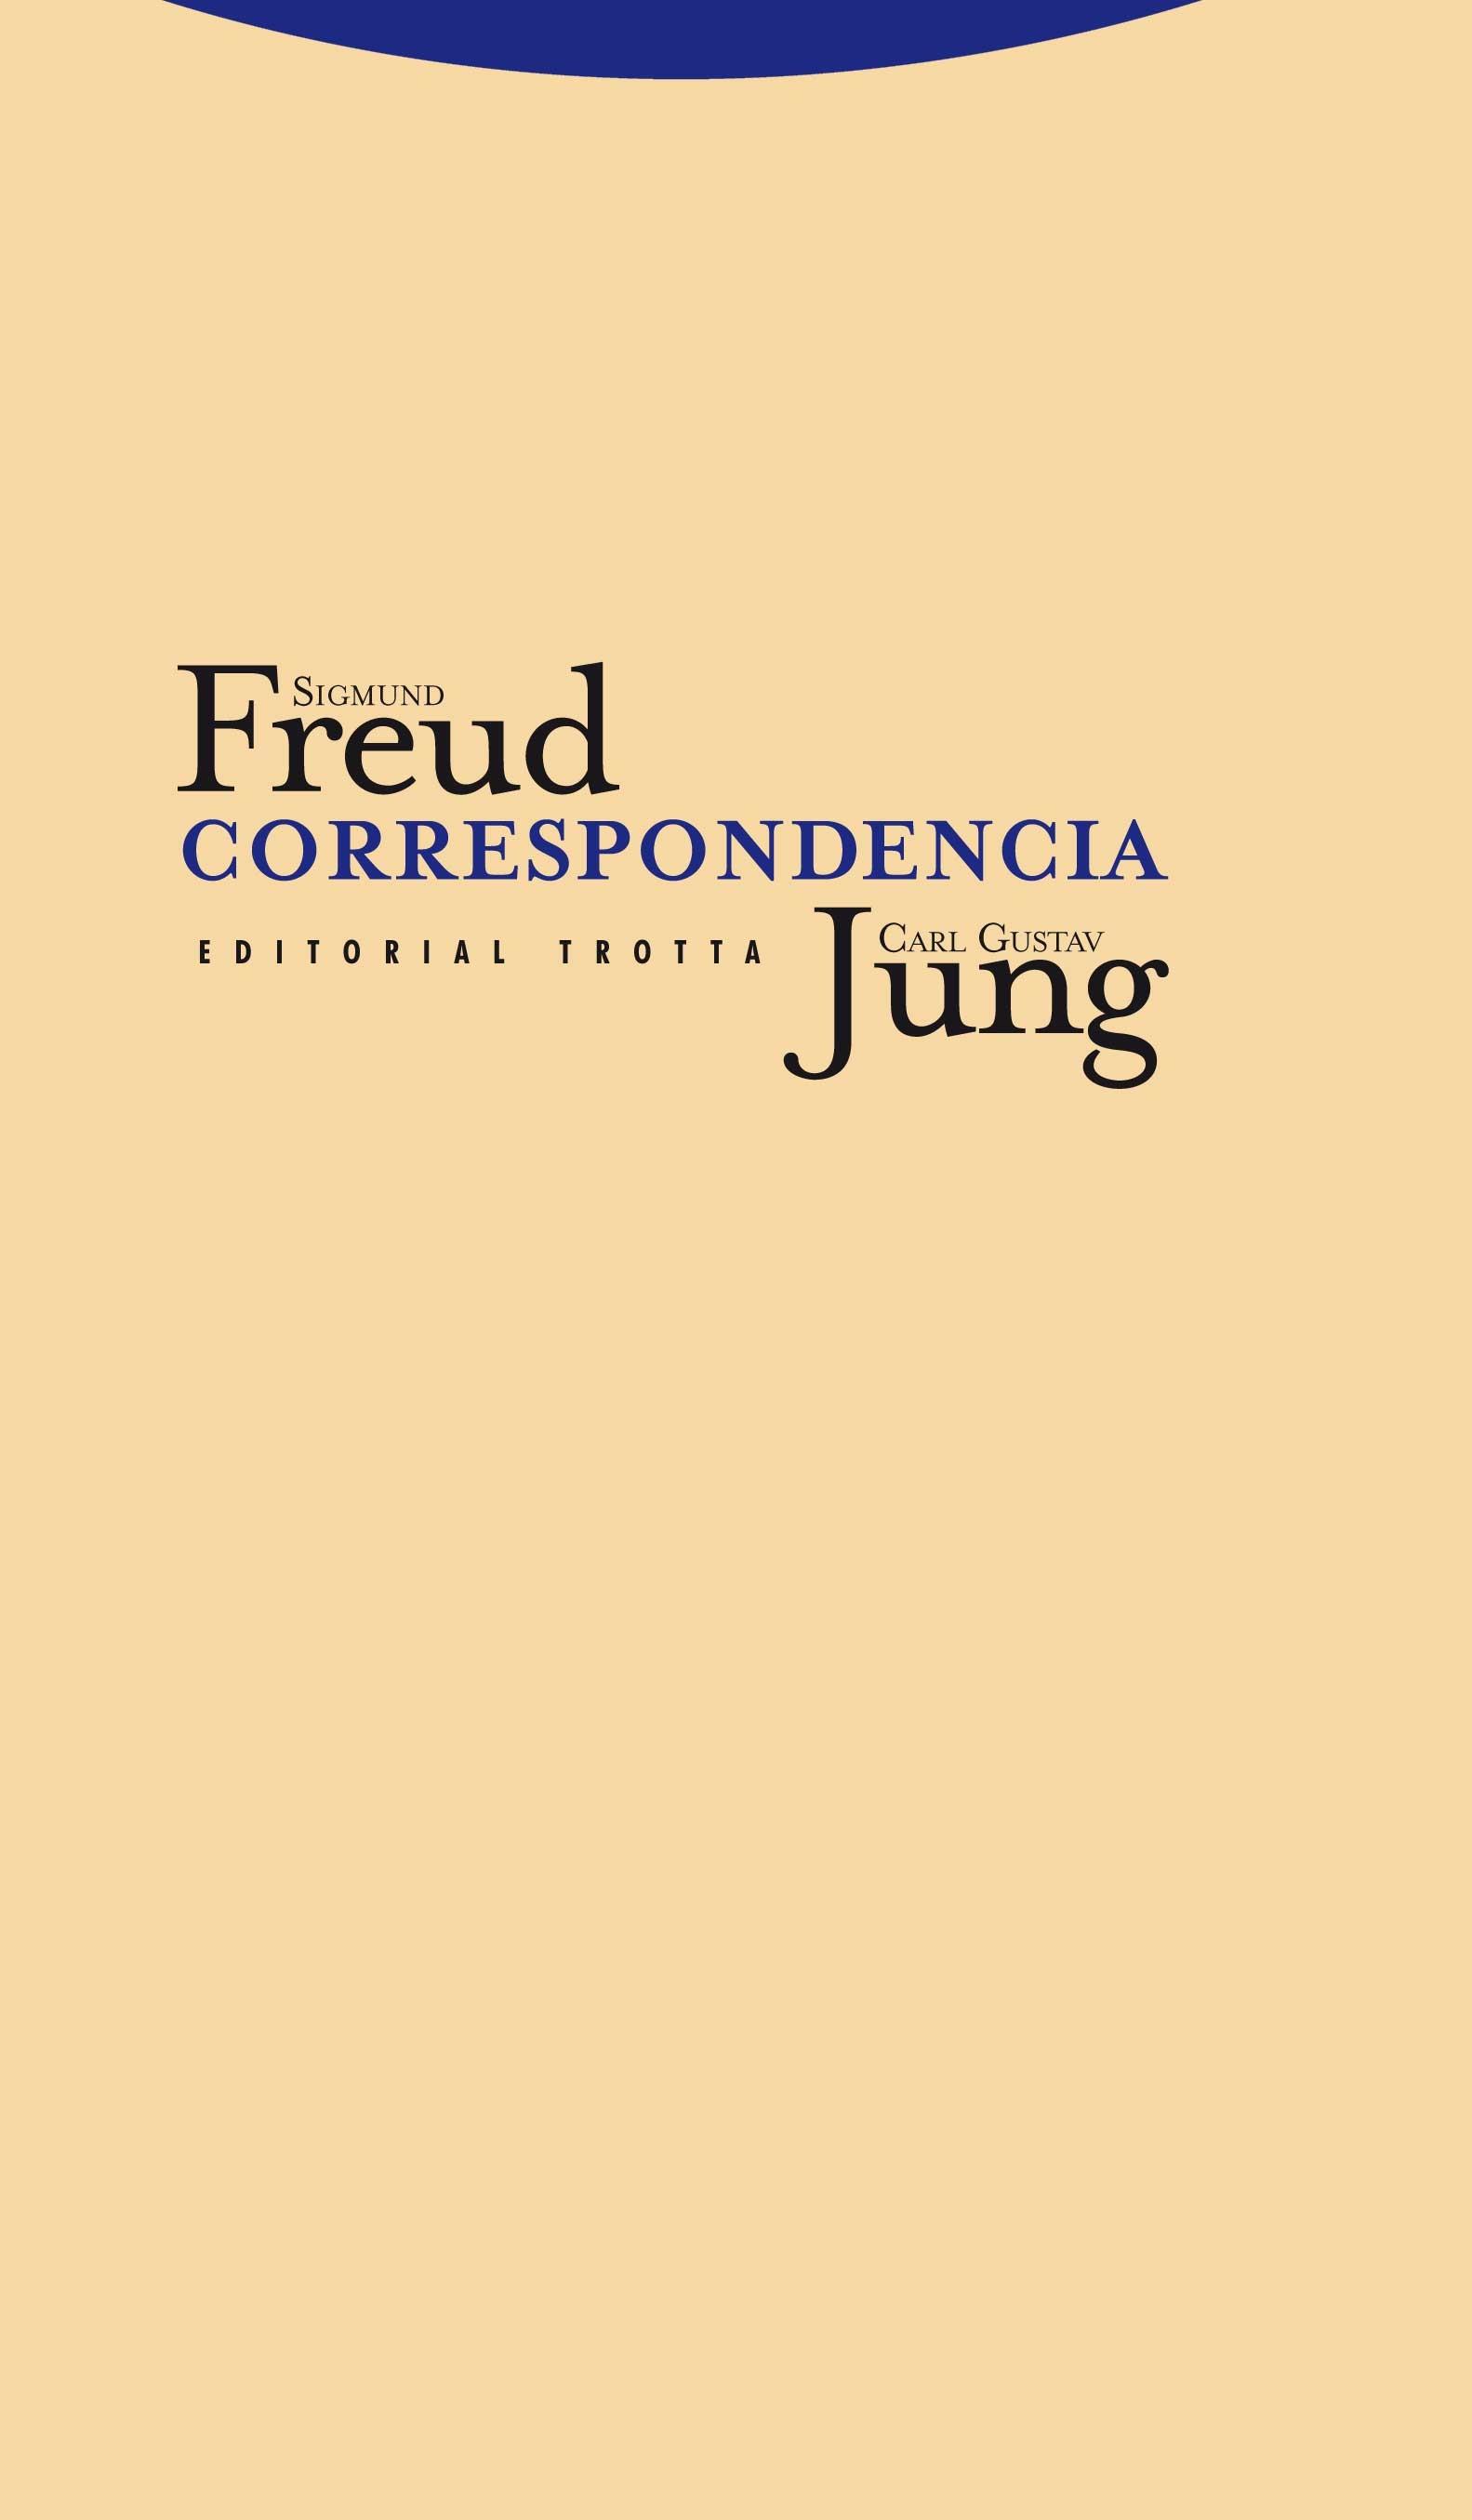 Sigmund Freud y Carl Gustav Jung: Correspondencia